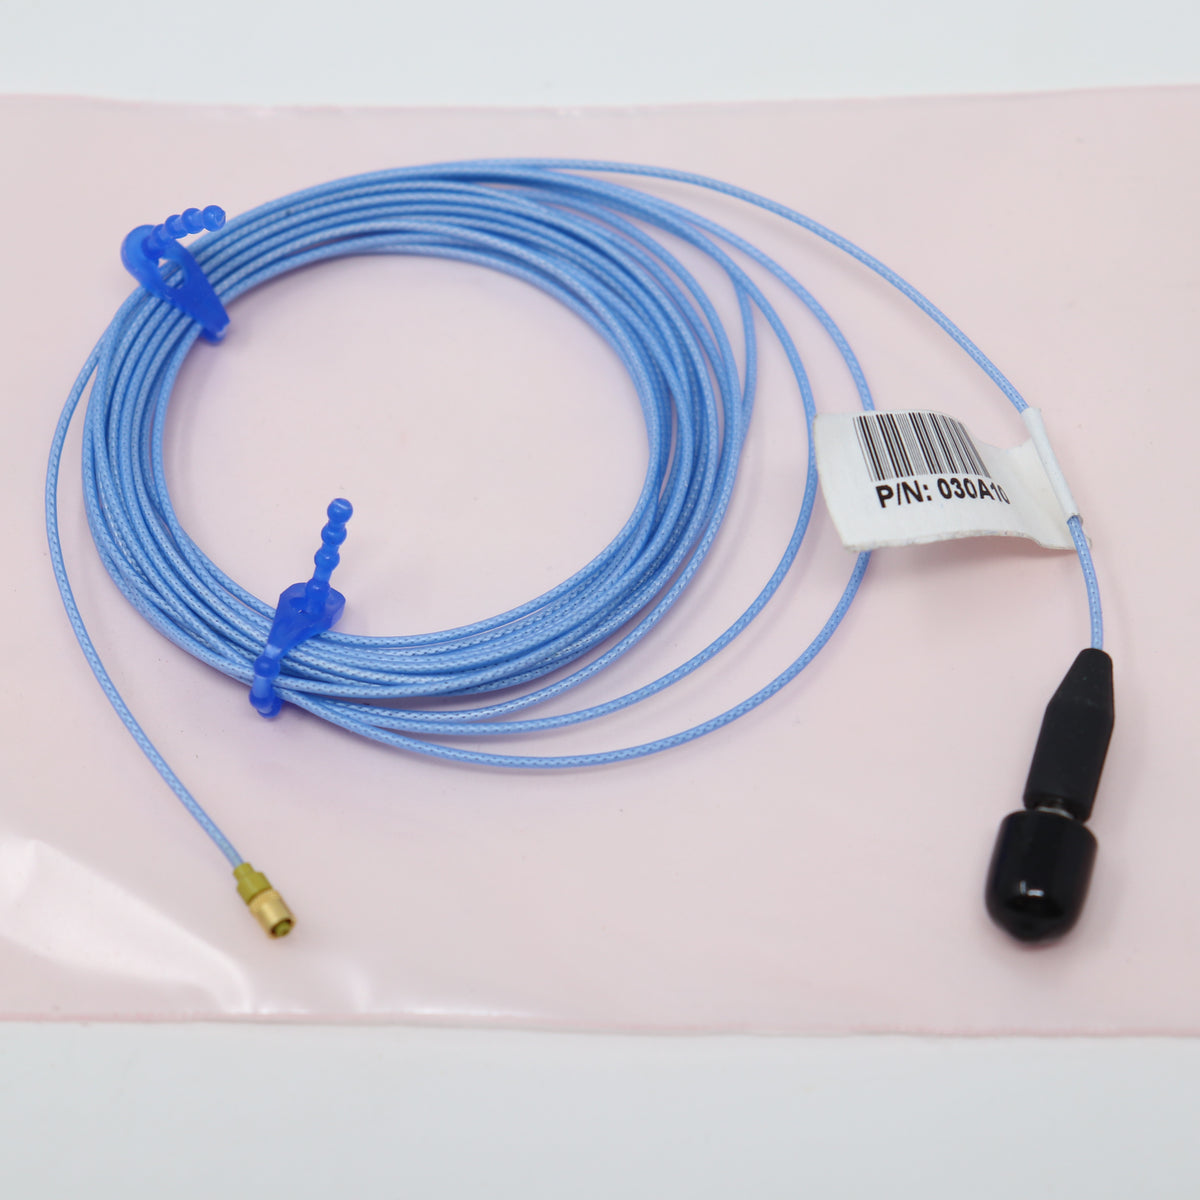 PCB Piezotronics 10' Miniature low-noise coaxial cable 13-56 to 10-32 plug 030A10